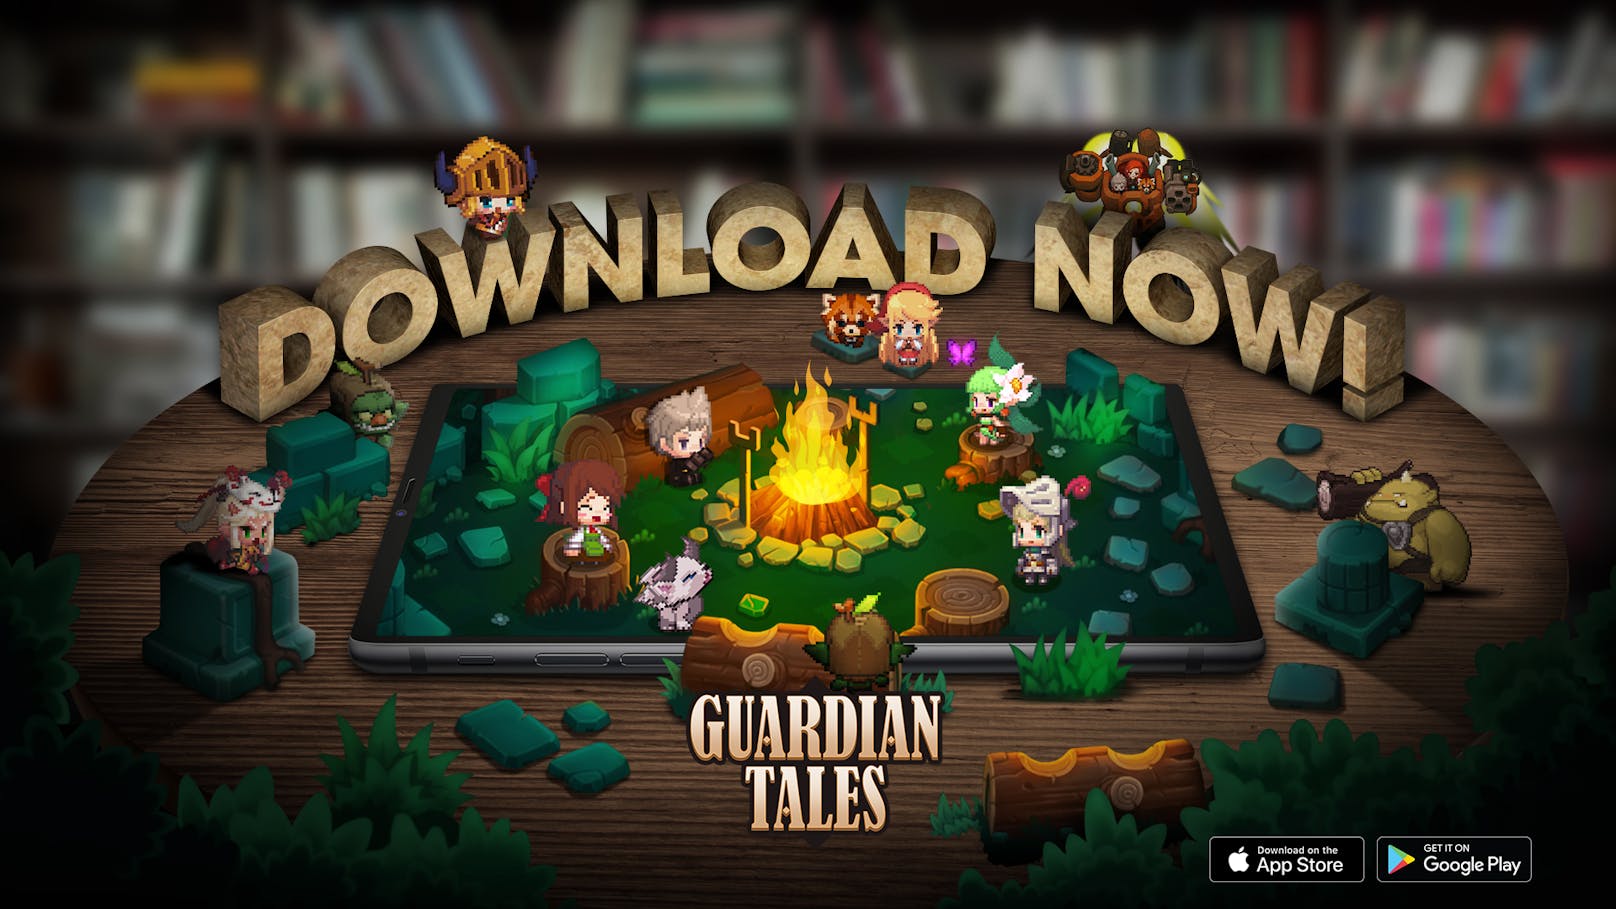 Die spannenden Geschichten, der tolle Sound und die wunderbare Pixel-Grafik von "Guardian Tales" wären es jedenfalls wert, das Mobile Game lange Zeit nicht mehr aus der Hand zu legen.